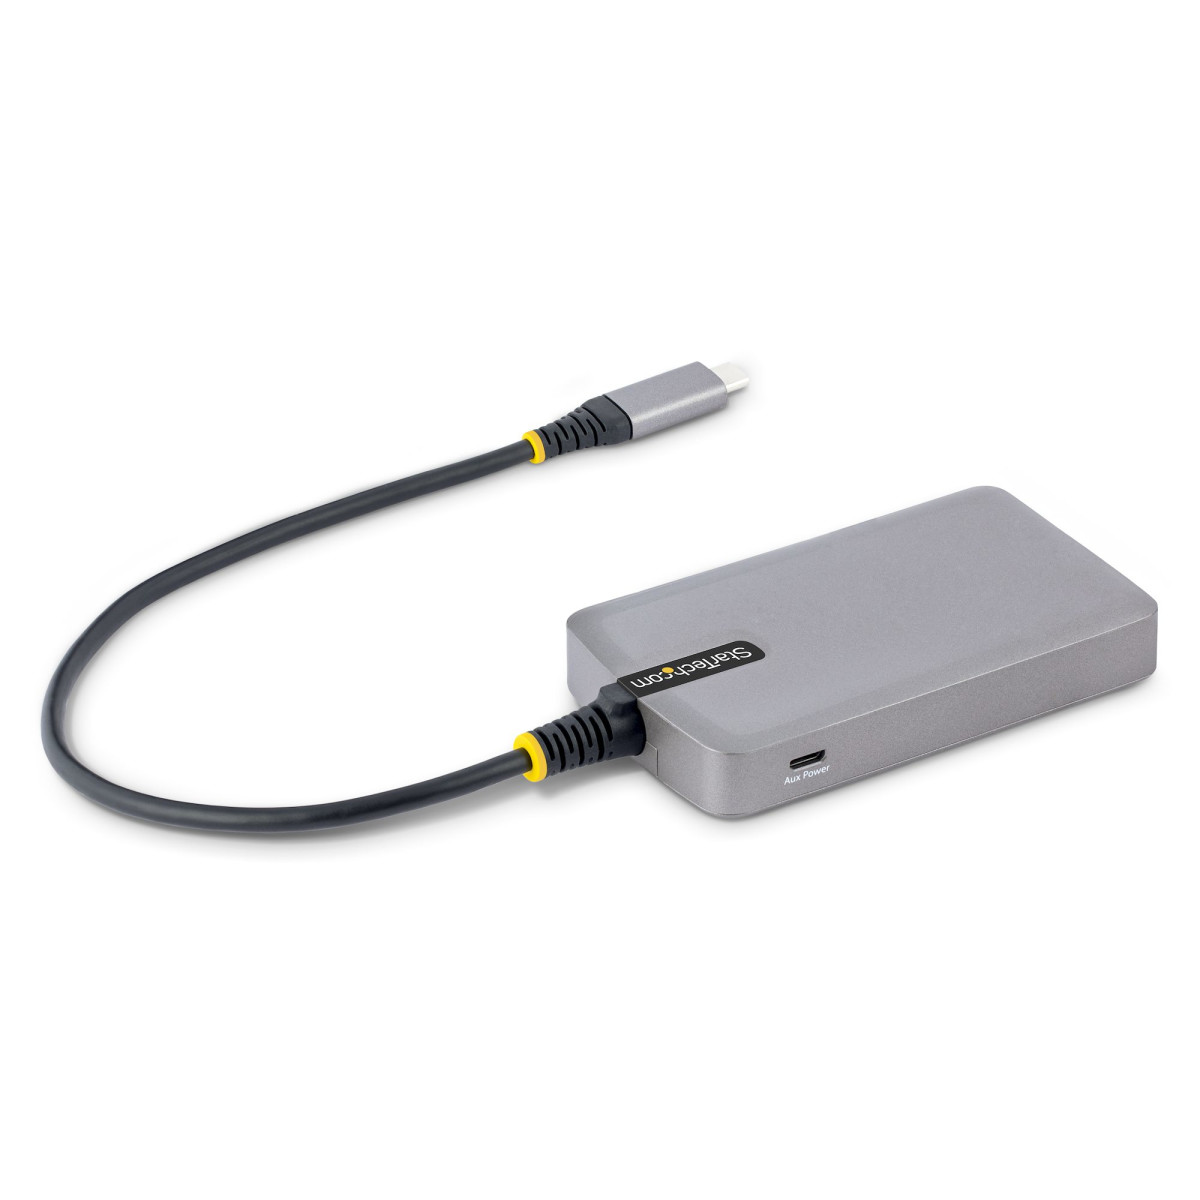 3-Port USB-C Hub w/ GbE Ethernet Adapter